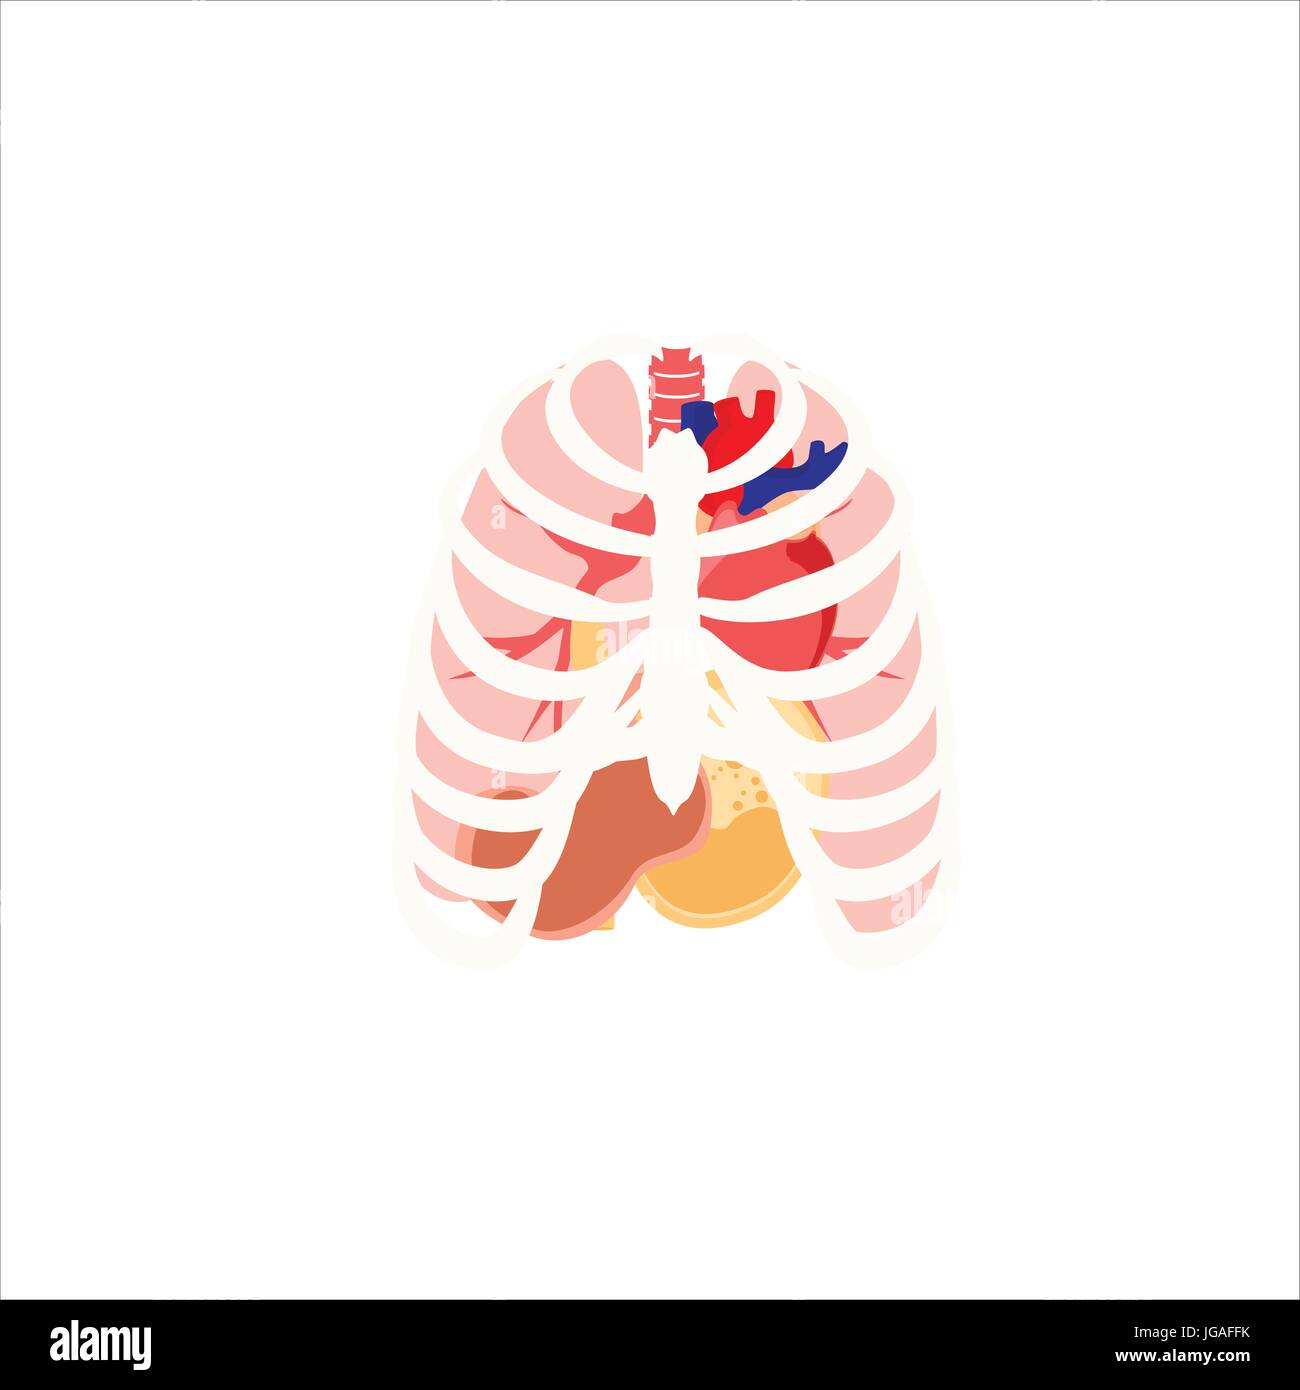 Vektor-Illustration von menschlichen Organen. Brustkorb, Lunge, Herz und Magen. Inneren Organe Icons und Symbole Stock Vektor